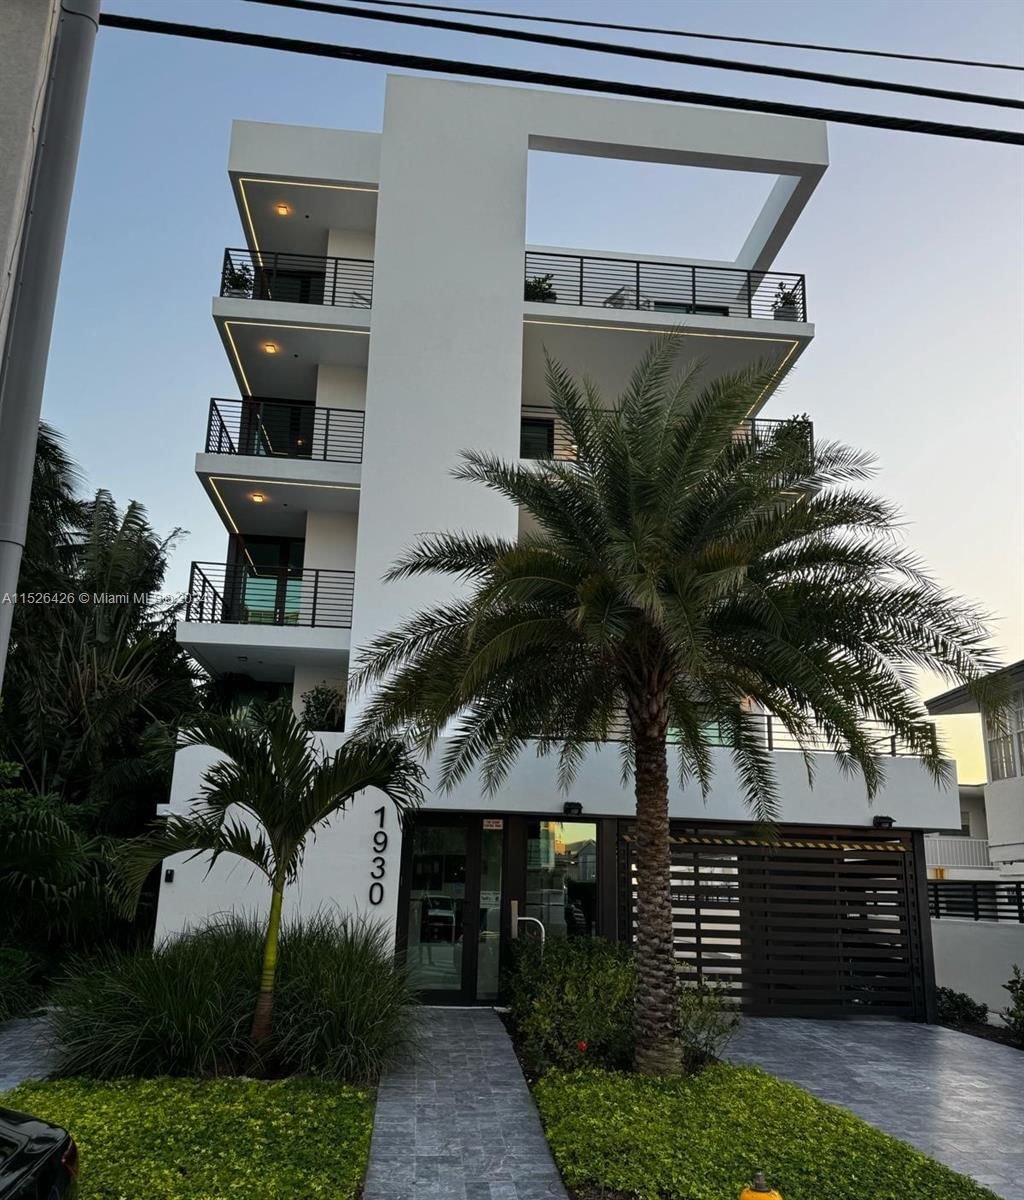 Real estate property located at 1930 Bay Dr Ph-1, Miami-Dade County, COSABELLA ON THE BAY CONDO, Miami Beach, FL